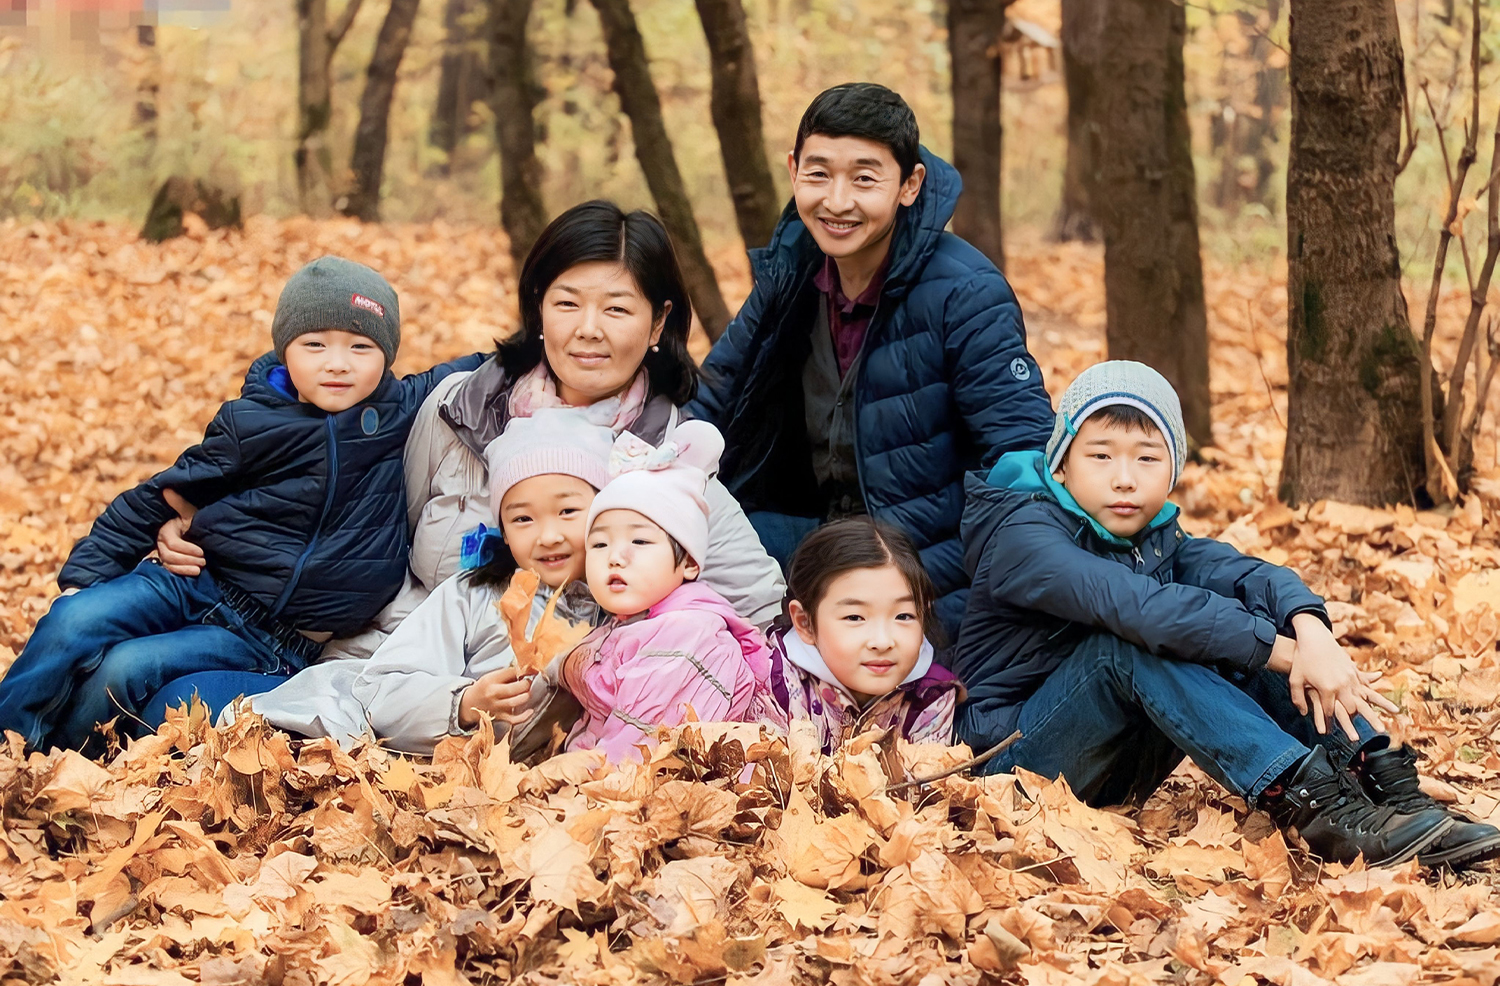 Евгений Хан | Бог помог создать счастливую семью